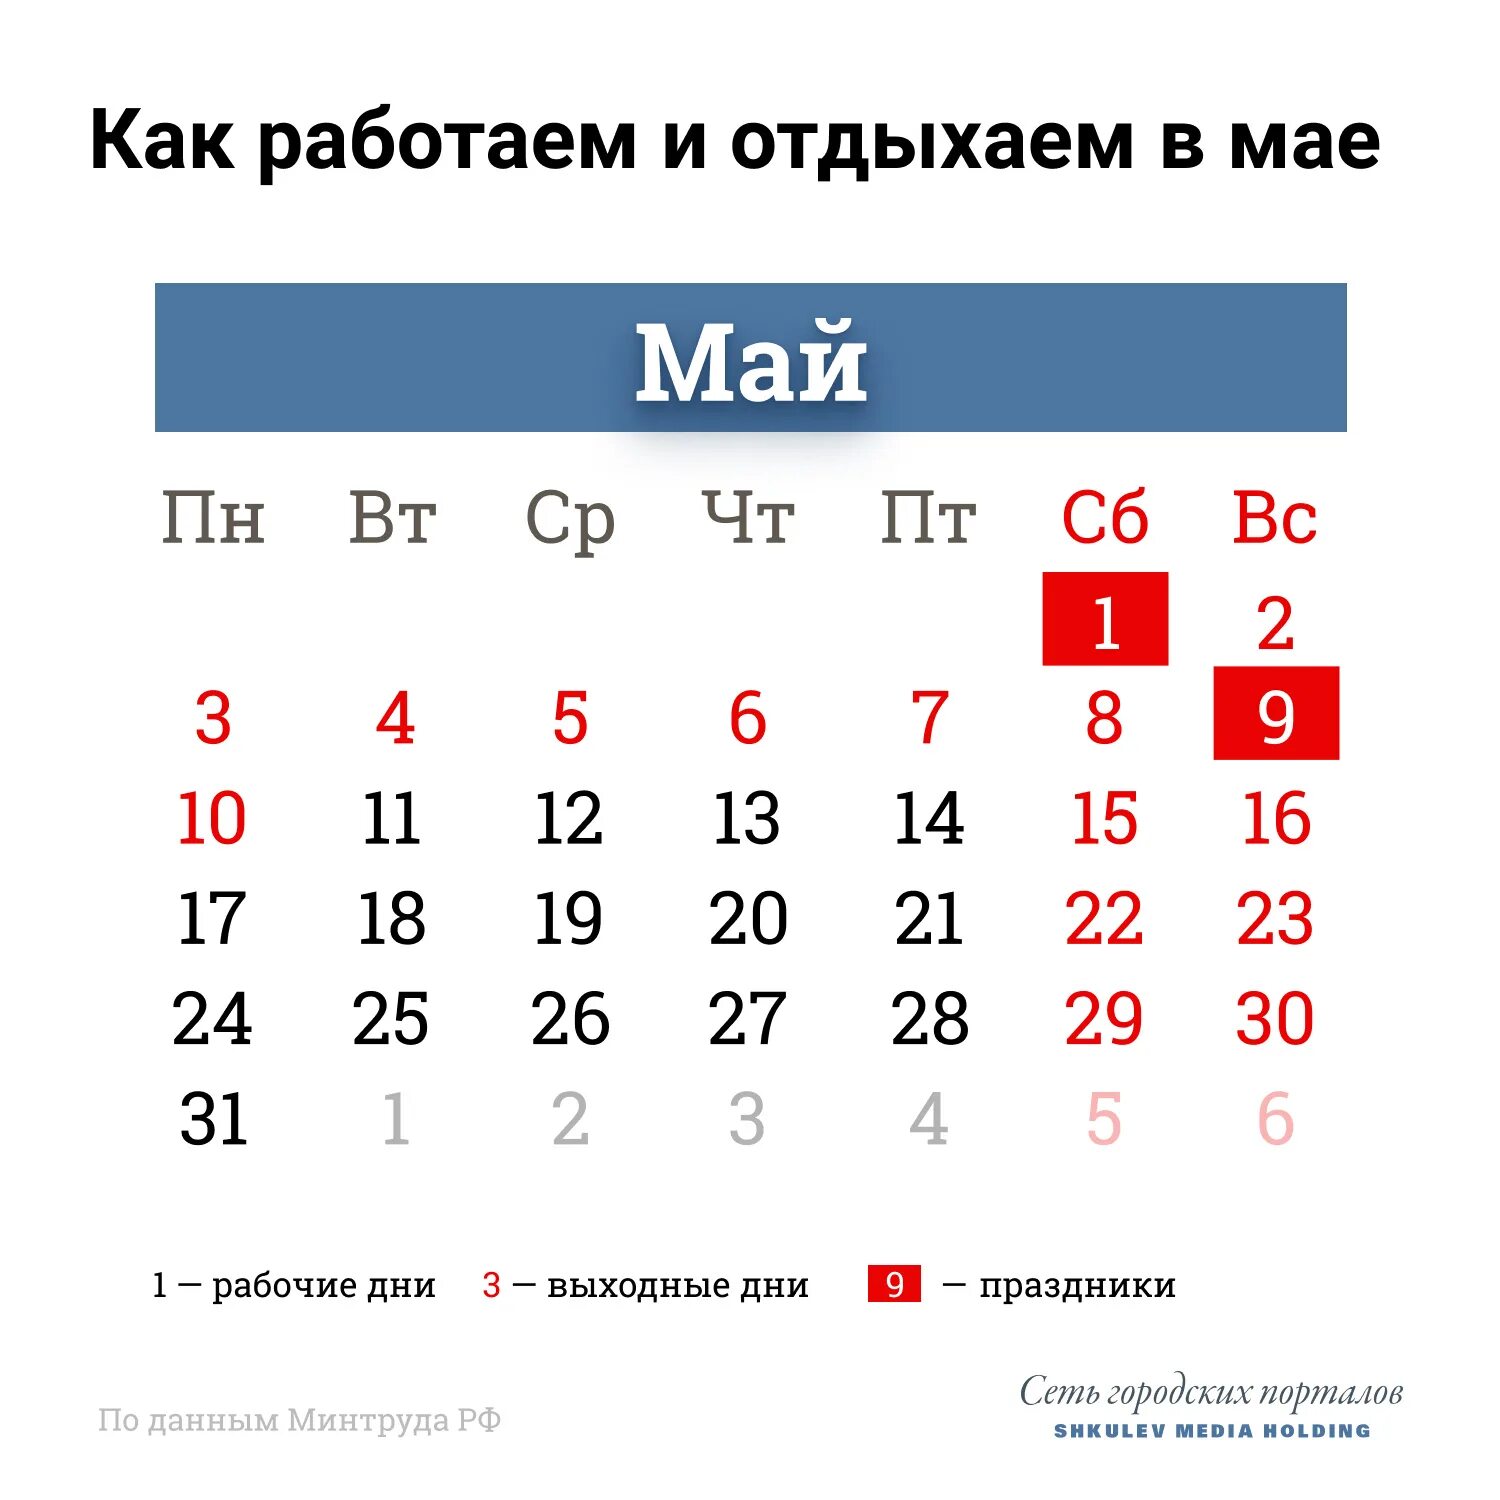 2 мая выходной или рабочий день. Праздничные дни в мае 2021 года в России. Выходные в мае. Майсеип праздник календарь. Майские праздники rfktylfh,.